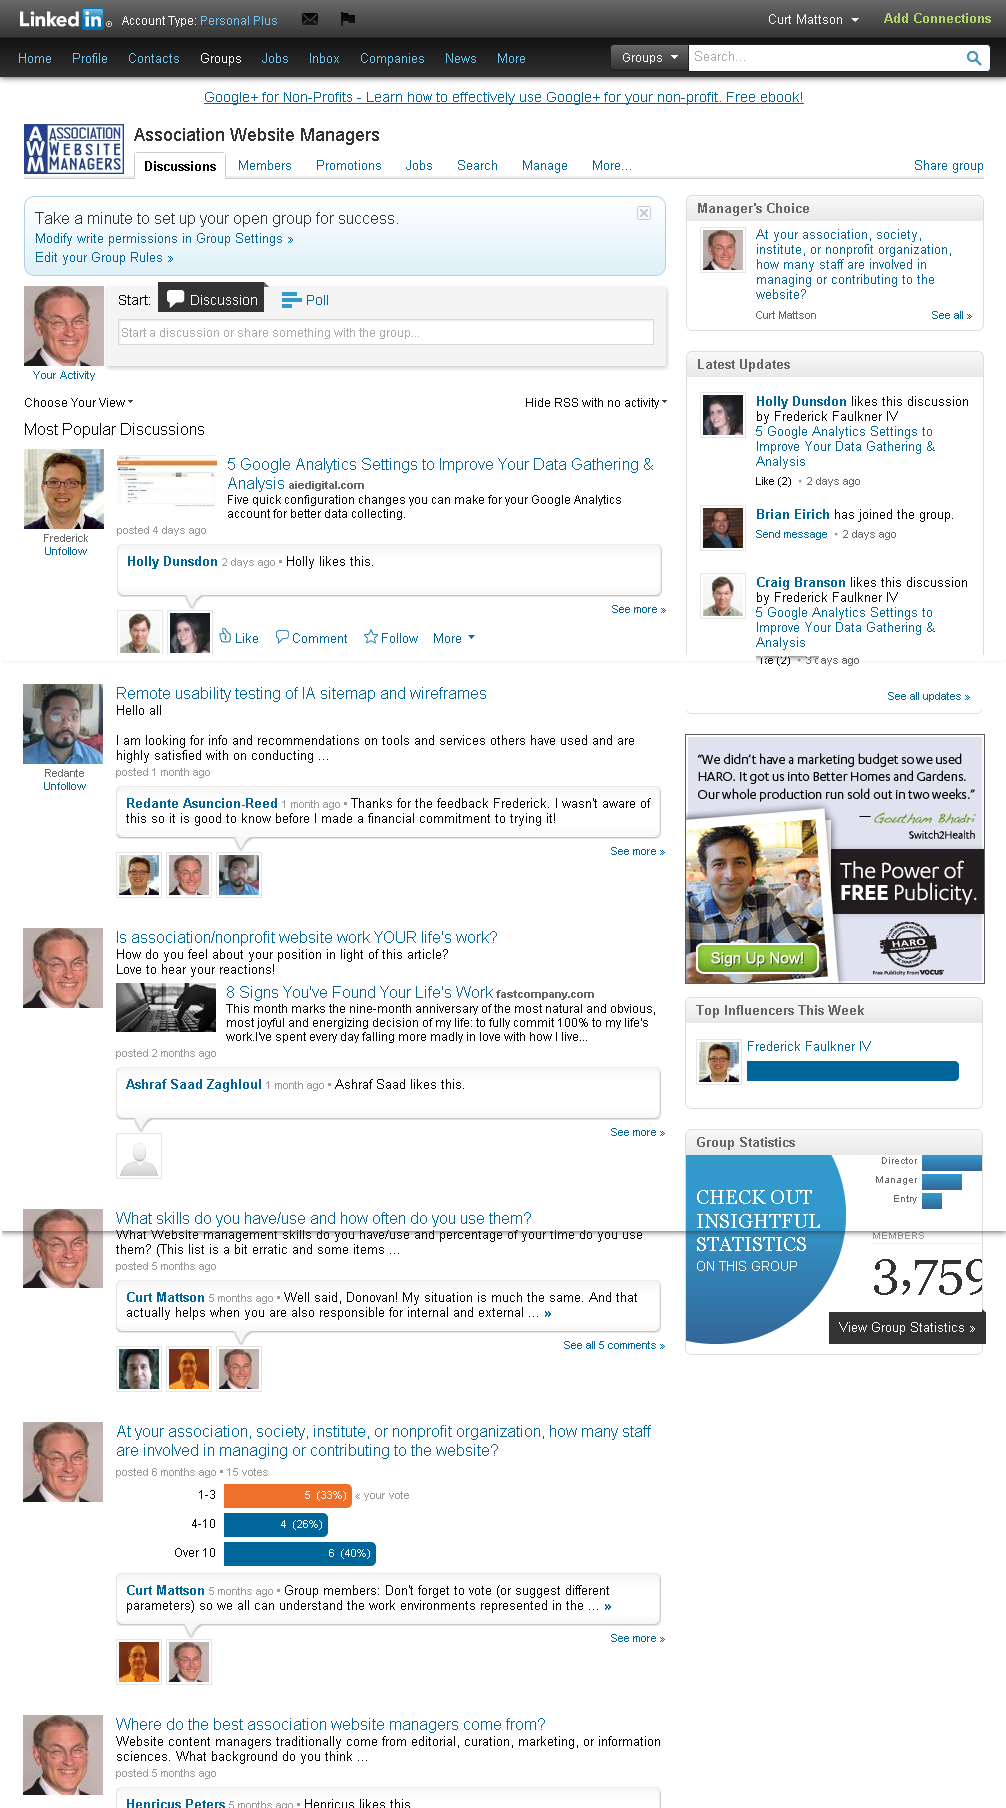 Association Website Managers LinkedIn Group screenshot